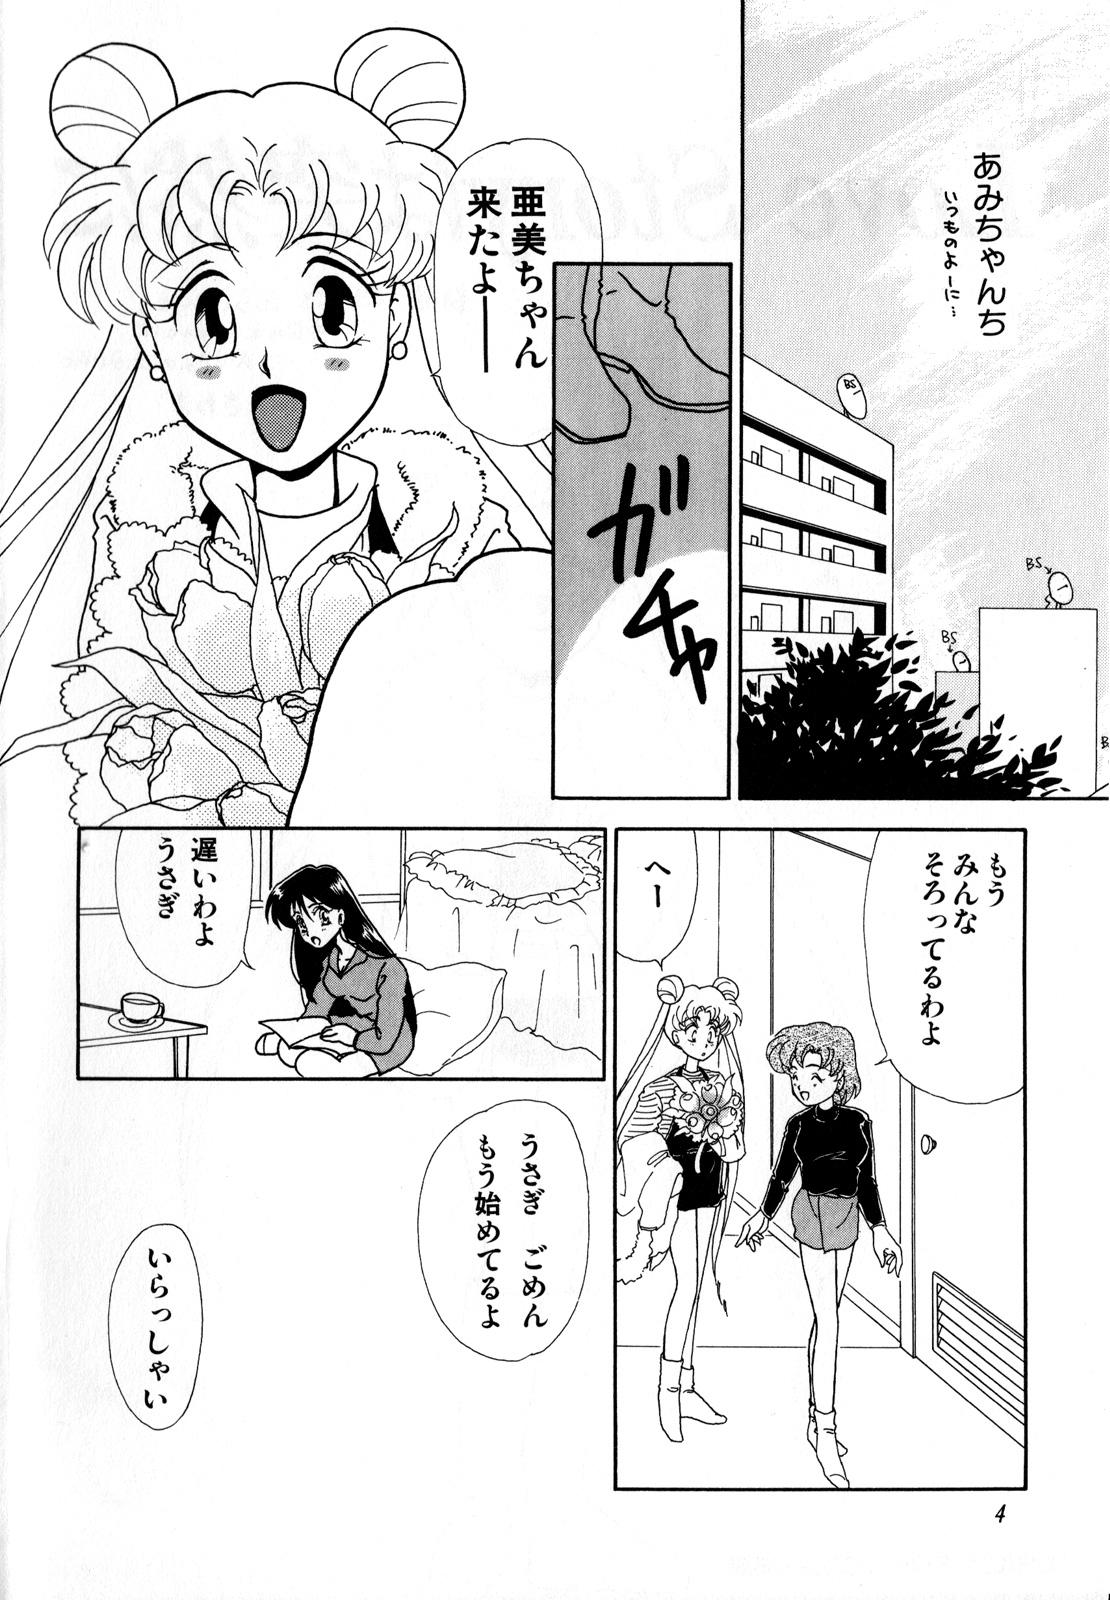 Amature Lunatic Party 3 - Sailor moon Vintage - Page 5